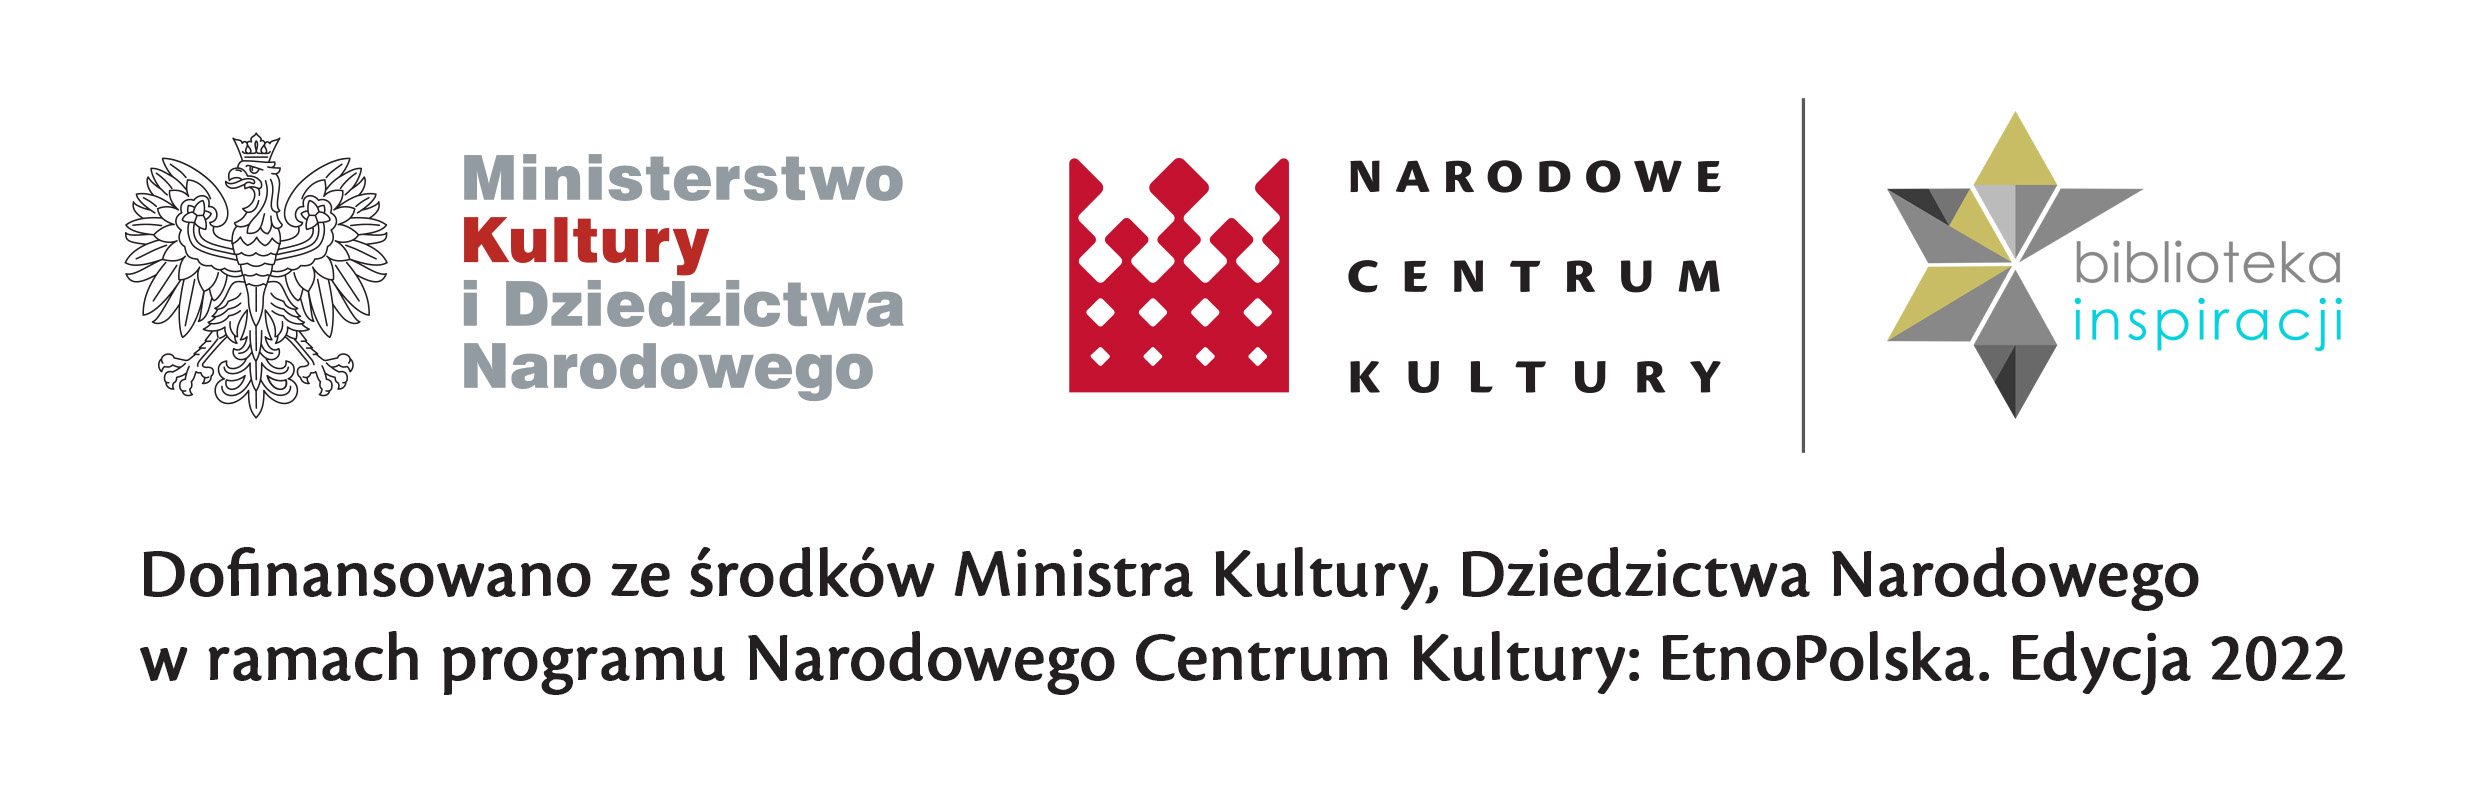 Belka z logotypami programu Narodowego Centrum Kultury:EtnoPolska. Edycja 2022